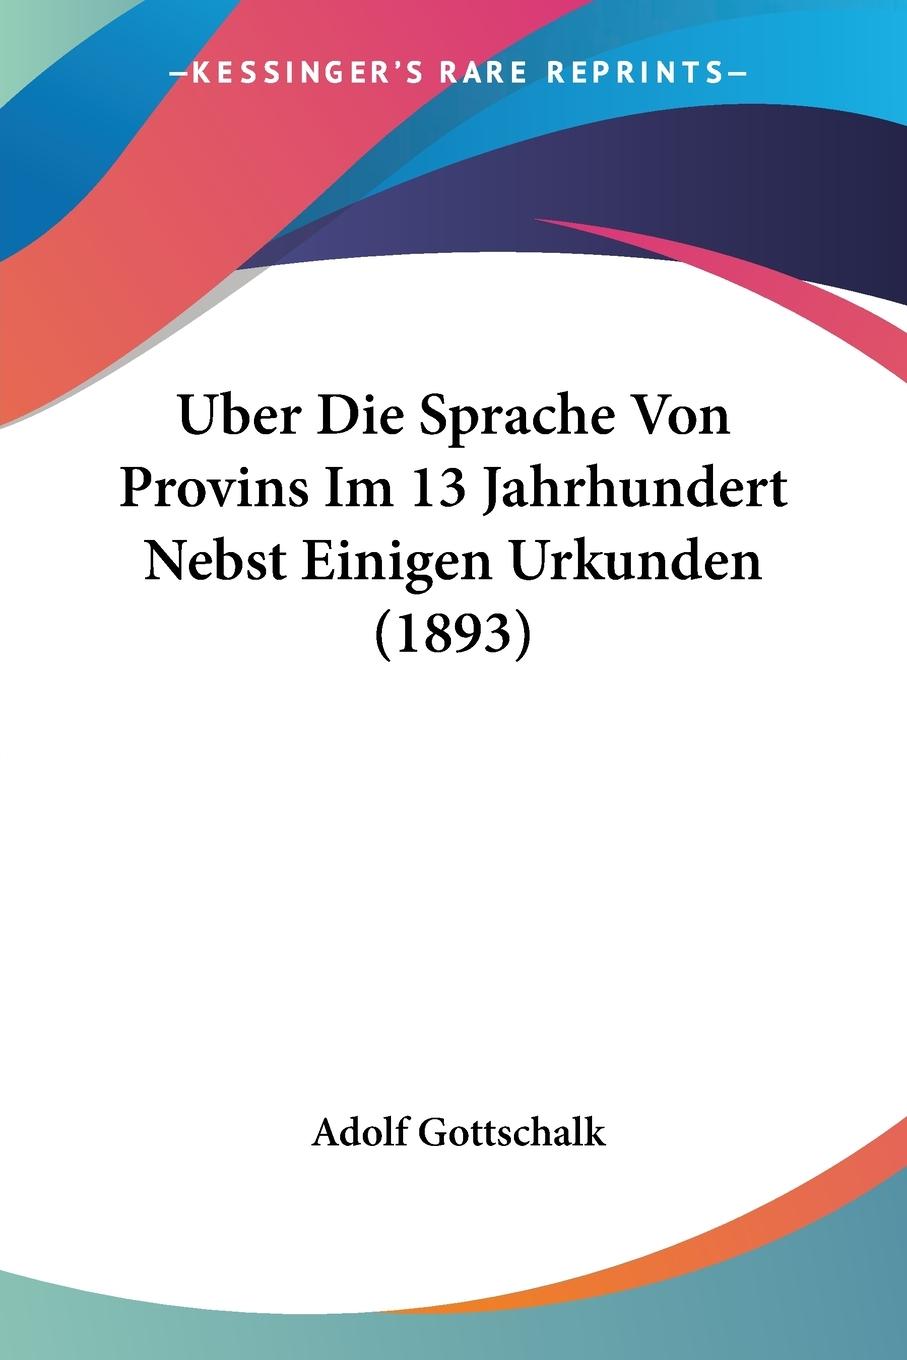 Uber Die Sprache Von Provins Im 13 Jahrhundert Nebst Einigen Urkunden (1893) - Gottschalk, Adolf